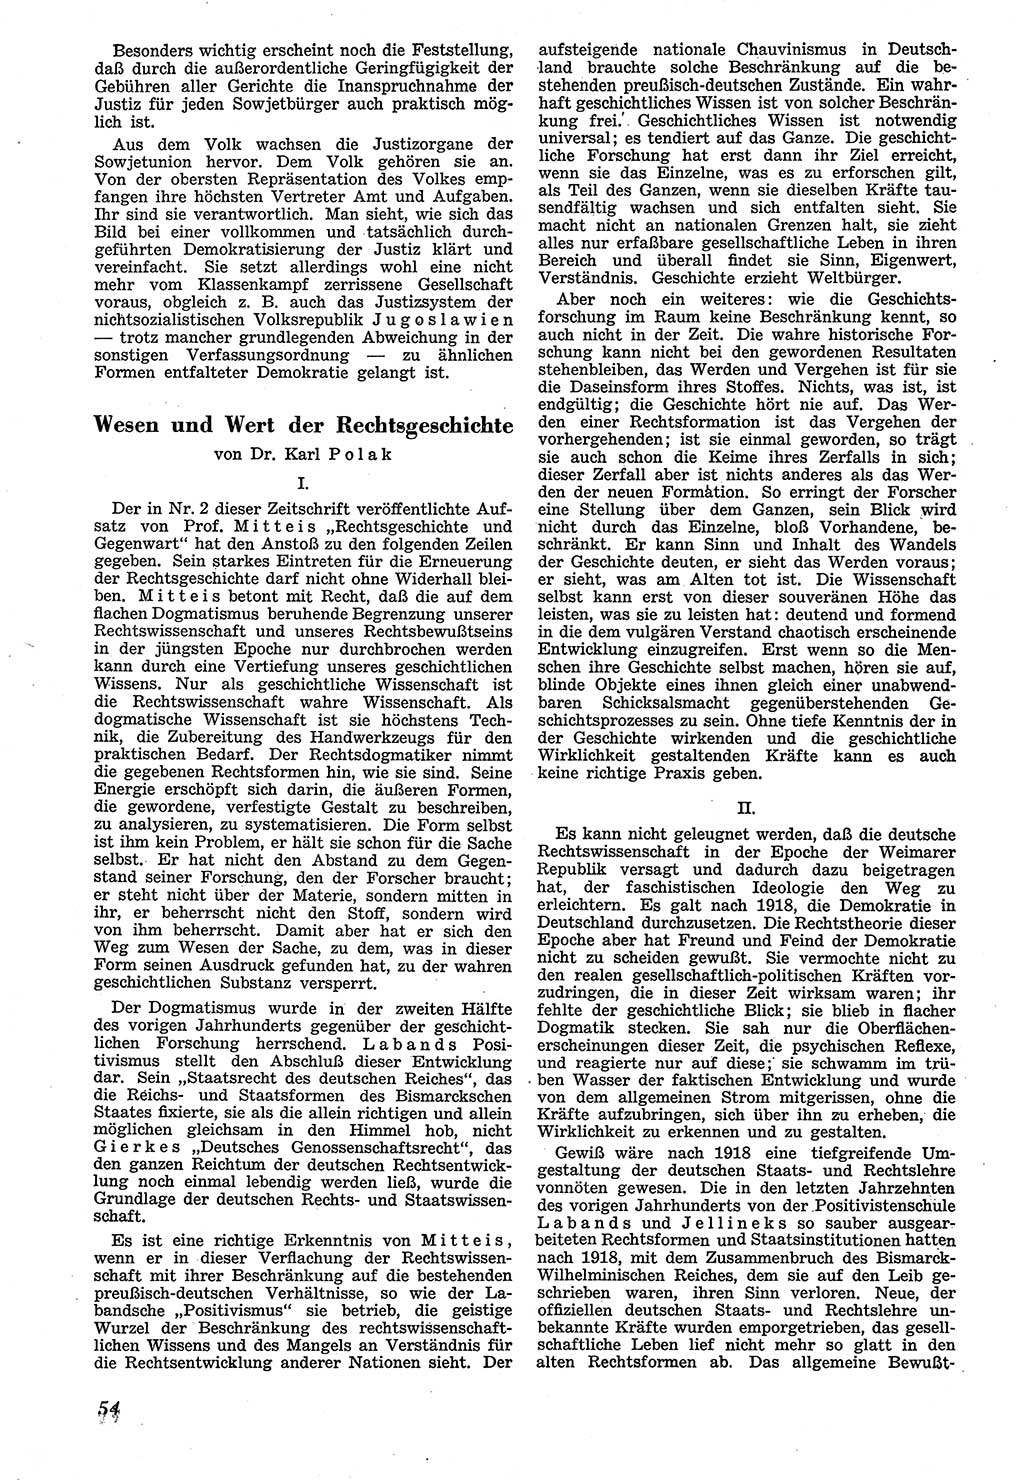 Neue Justiz (NJ), Zeitschrift für Recht und Rechtswissenschaft [Sowjetische Besatzungszone (SBZ) Deutschland], 1. Jahrgang 1947, Seite 54 (NJ SBZ Dtl. 1947, S. 54)